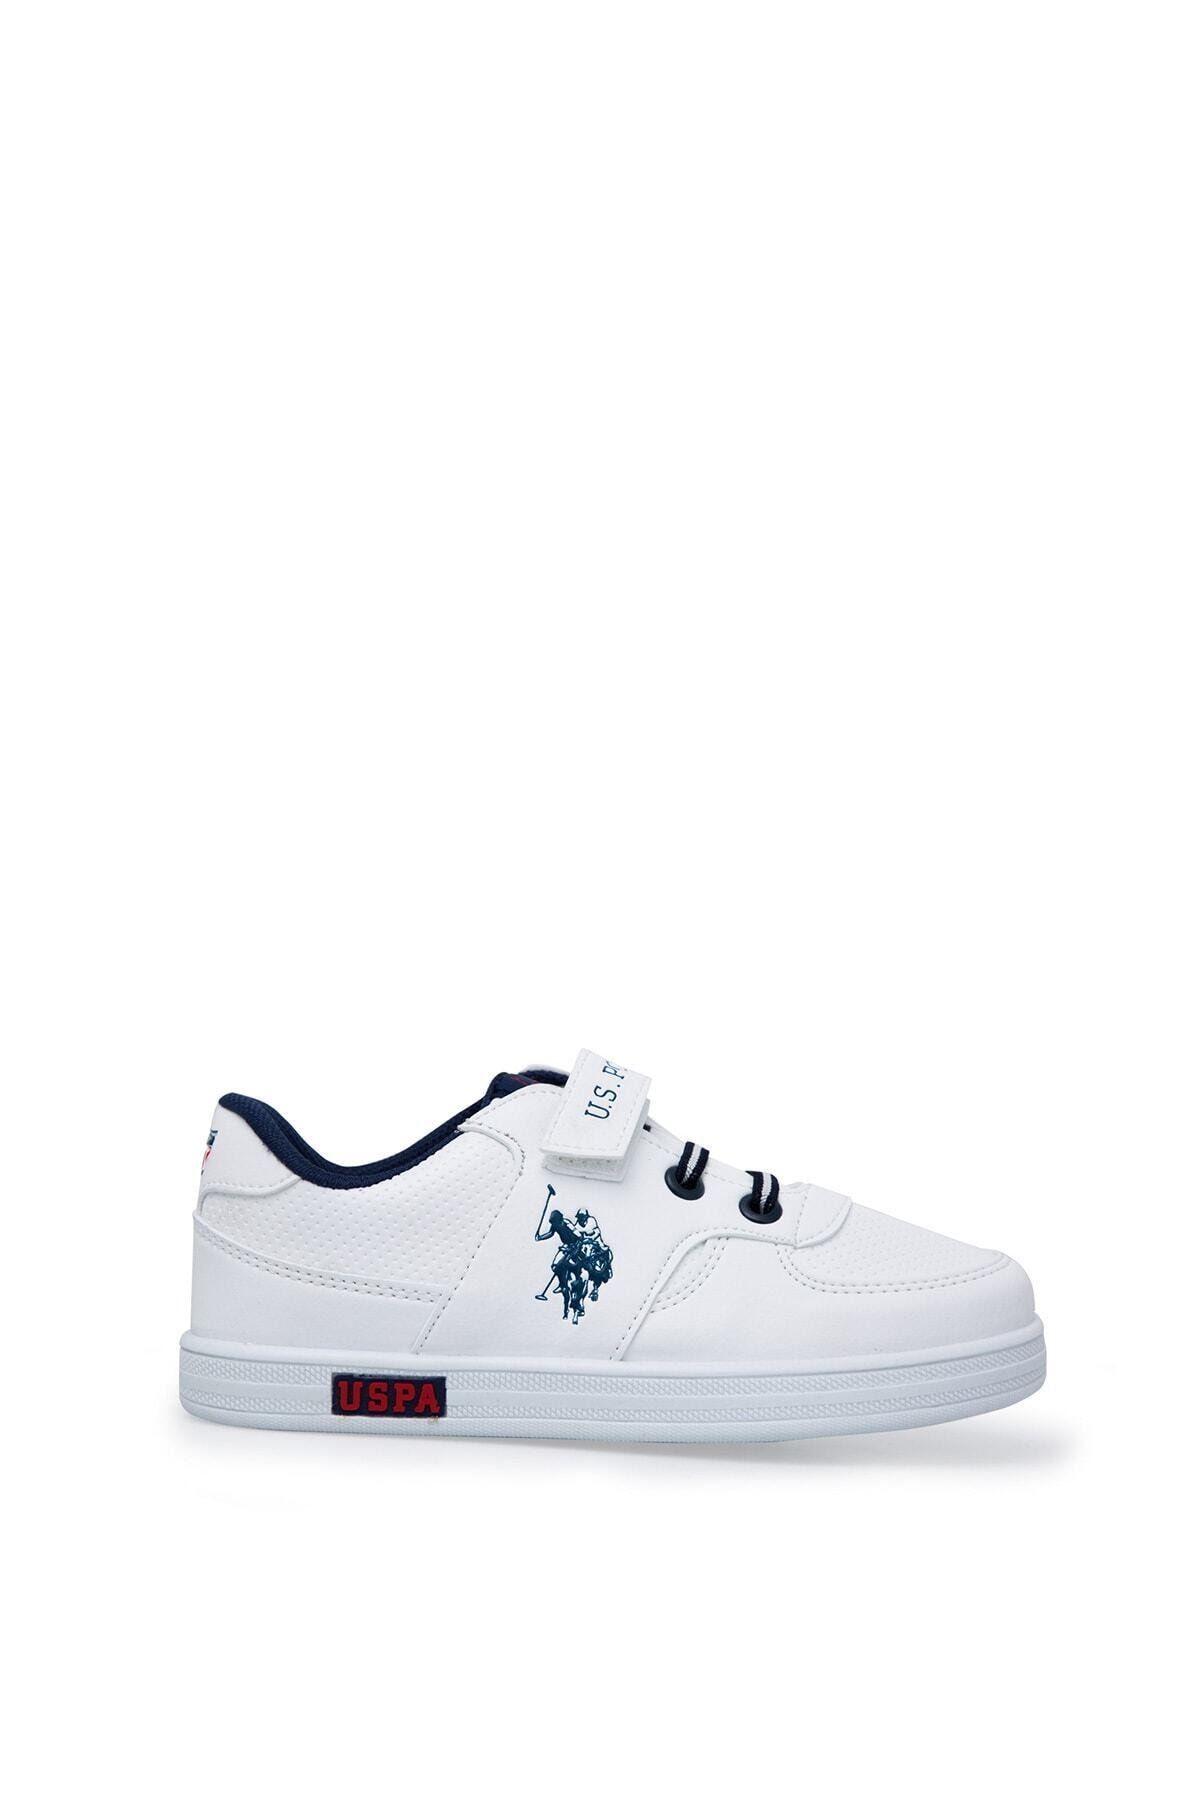 U.S. Polo Assn. Cameron Beyaz Erkek Çocuk Sneaker Ayakkabı 100380400